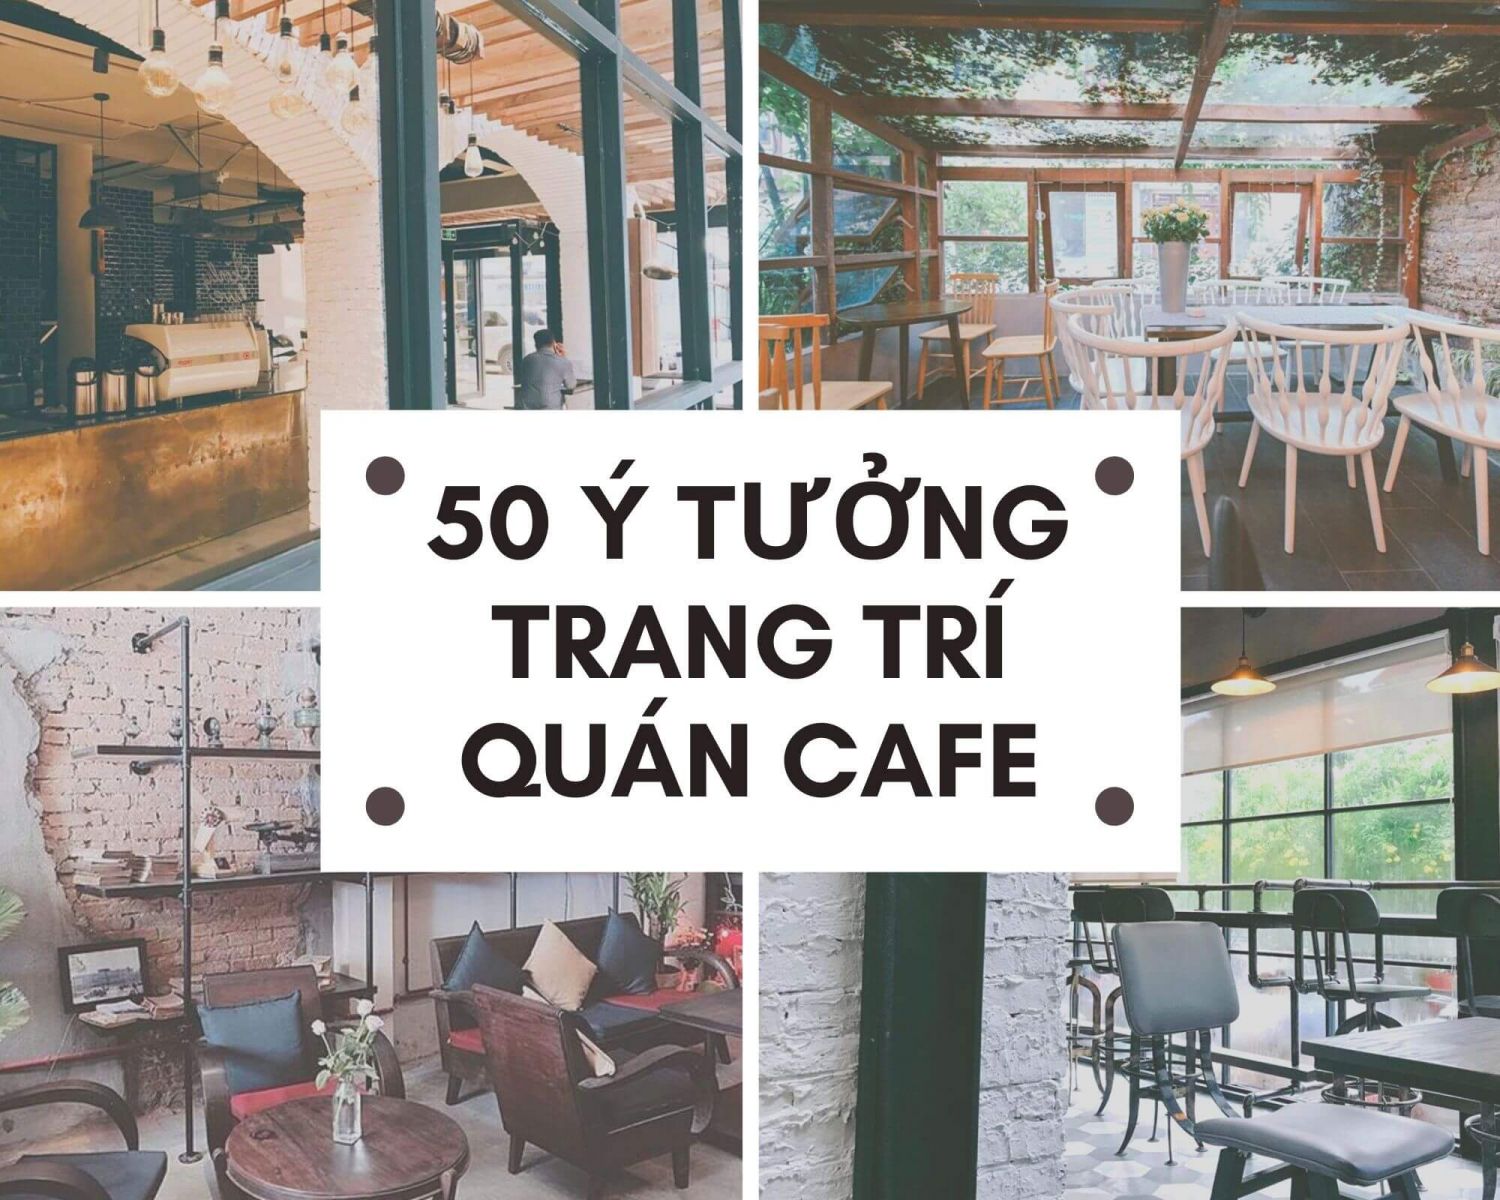 50-y-tuong-trang-tri-quan-cafe-tro-nen-noi-bat-thu-hut-khach-hang